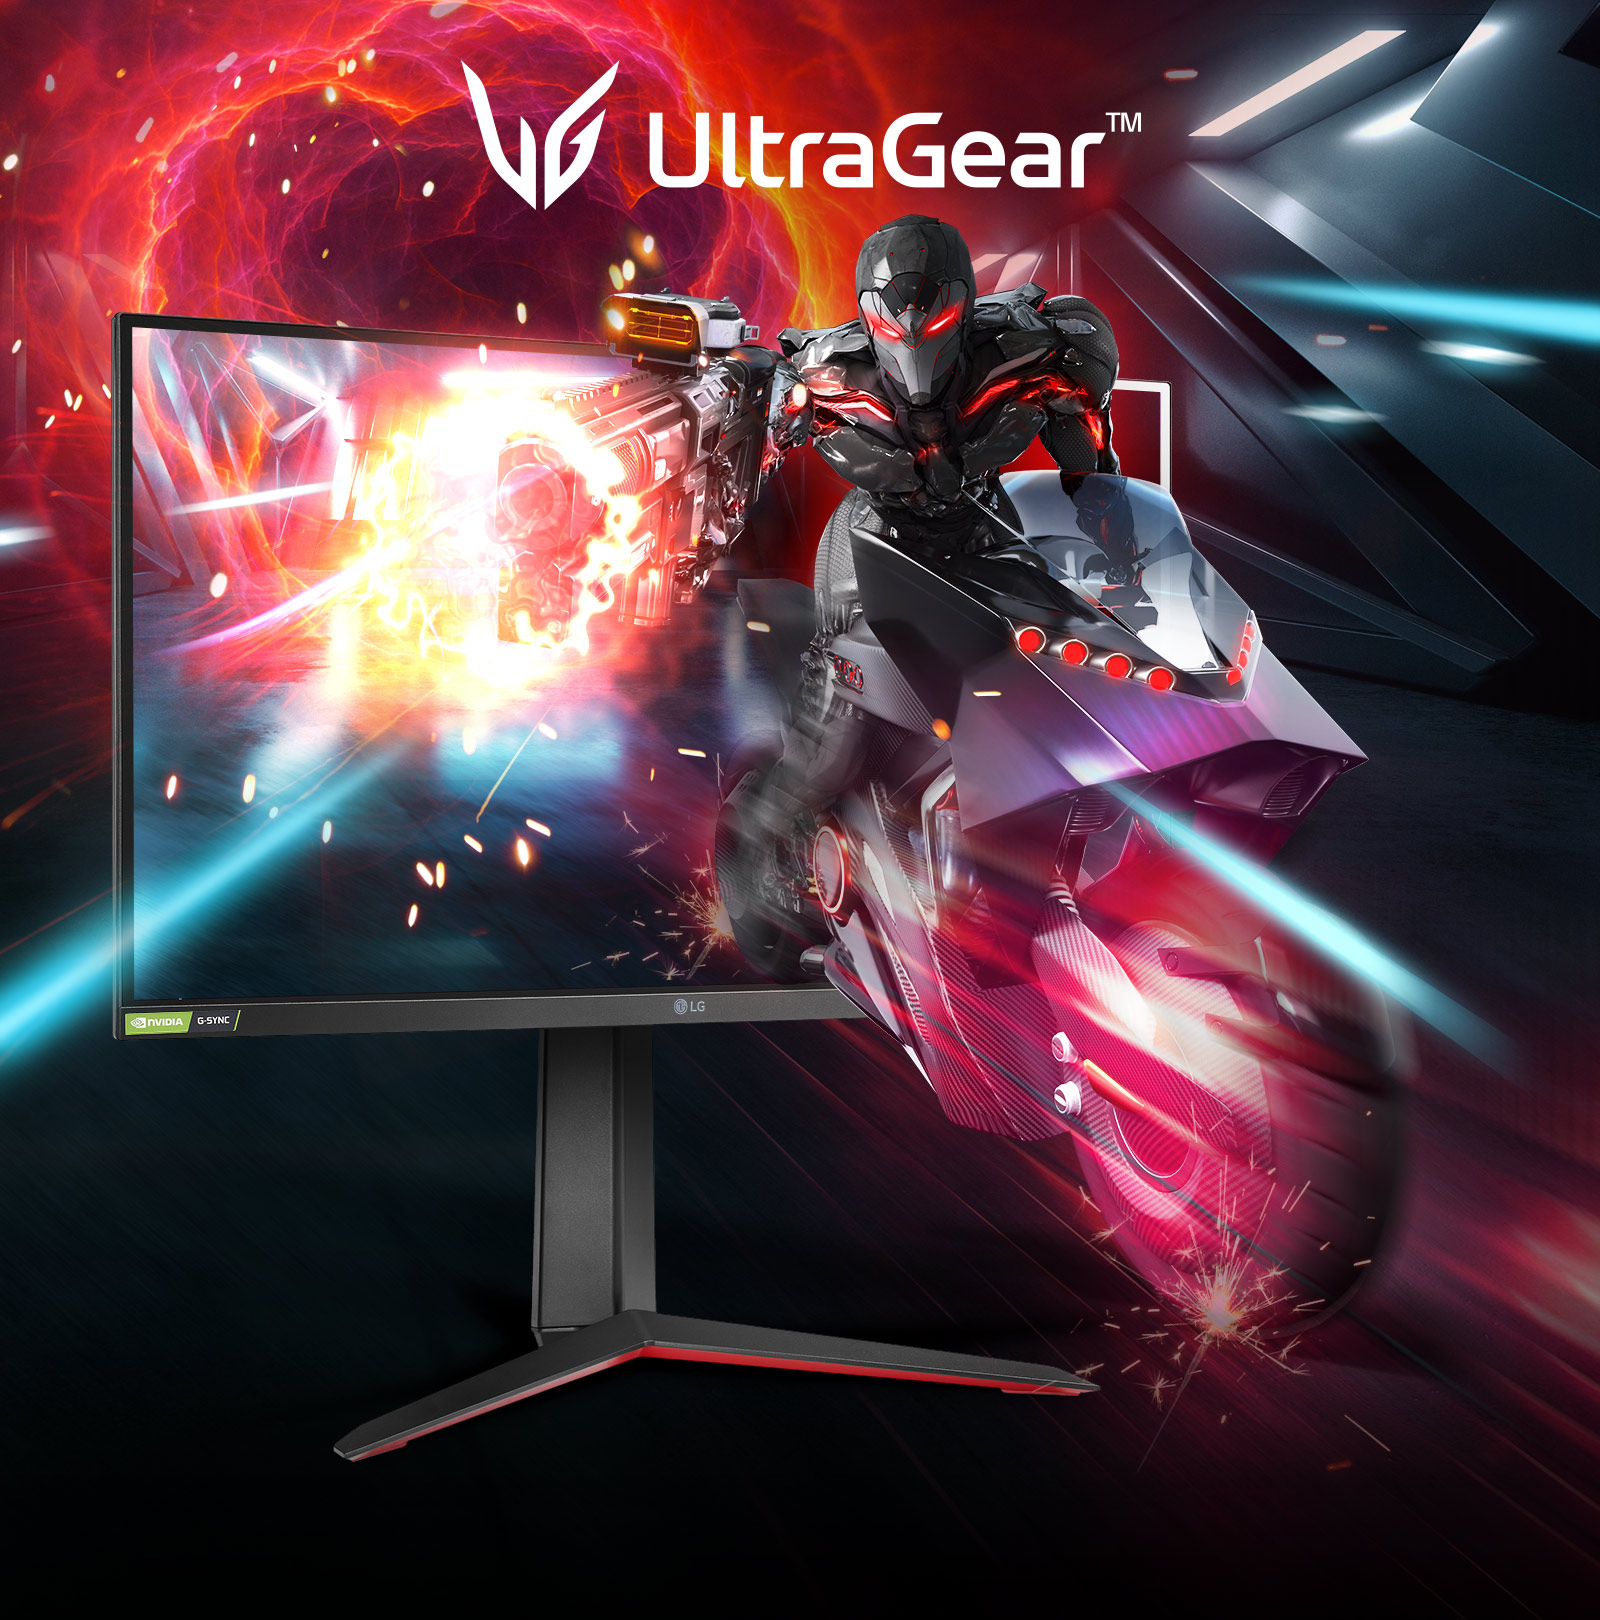 Монитор LG Ultragear как мощное устройство для игр